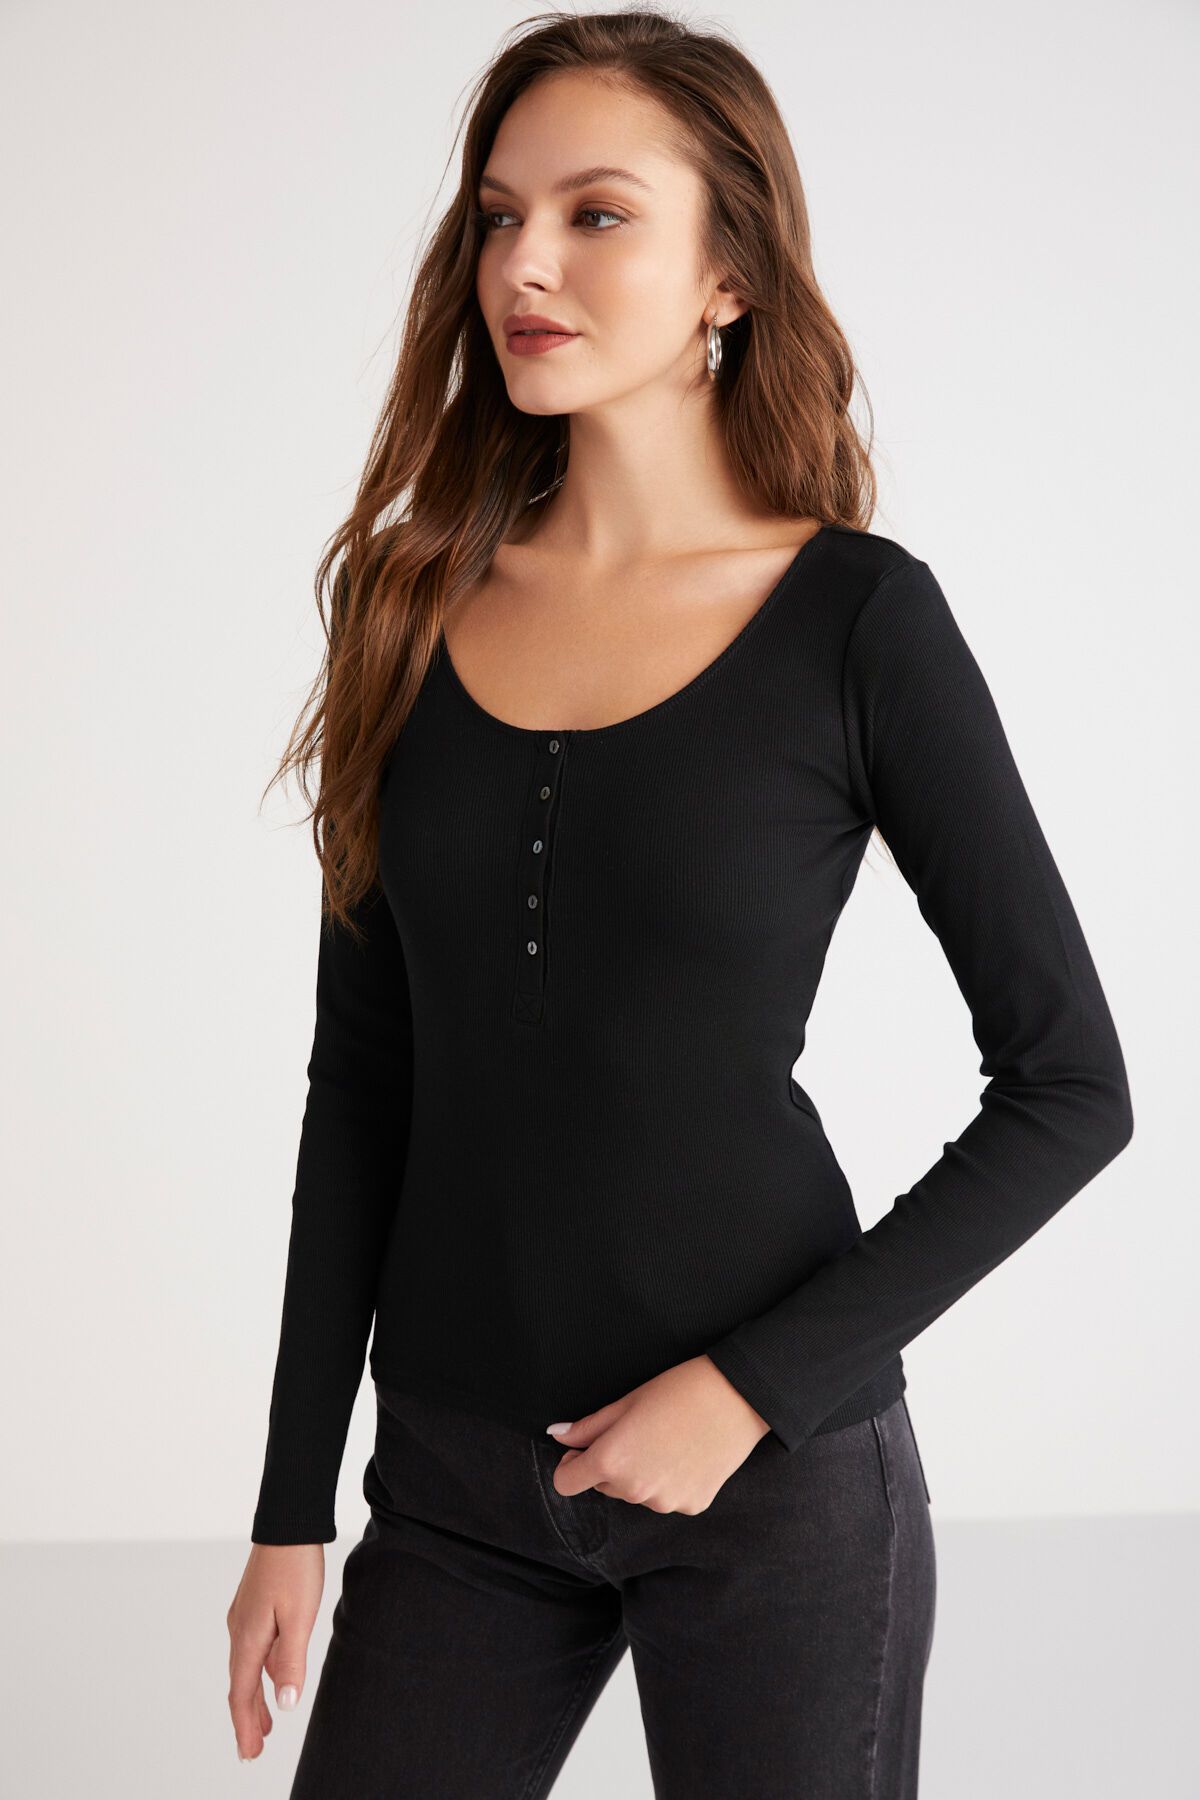 ETHIQUET Zazana Kadın Fitilli Görünümlü Vücudu Tamamen Saran Derin Yuvarlak Yaka Düğmeli Siyah Bluz